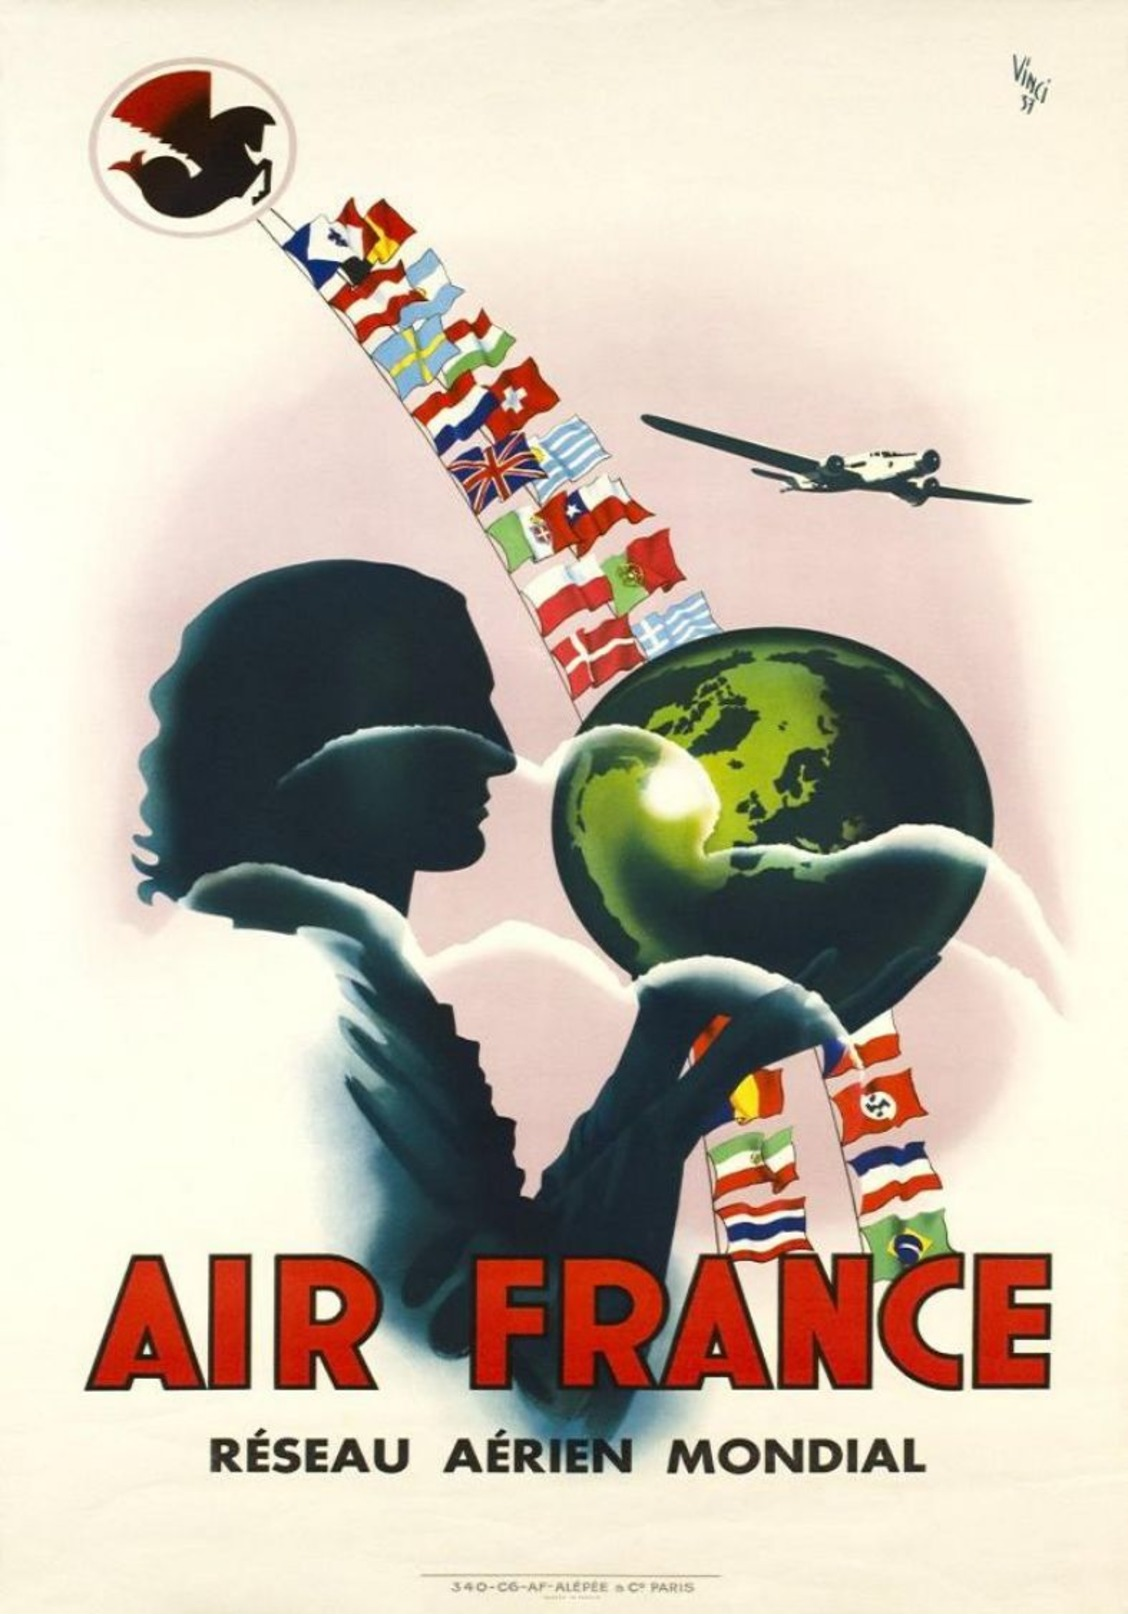 Air France Réseau Aérien Mondial 1937 - Postcard - Poster Reproduction - Advertising